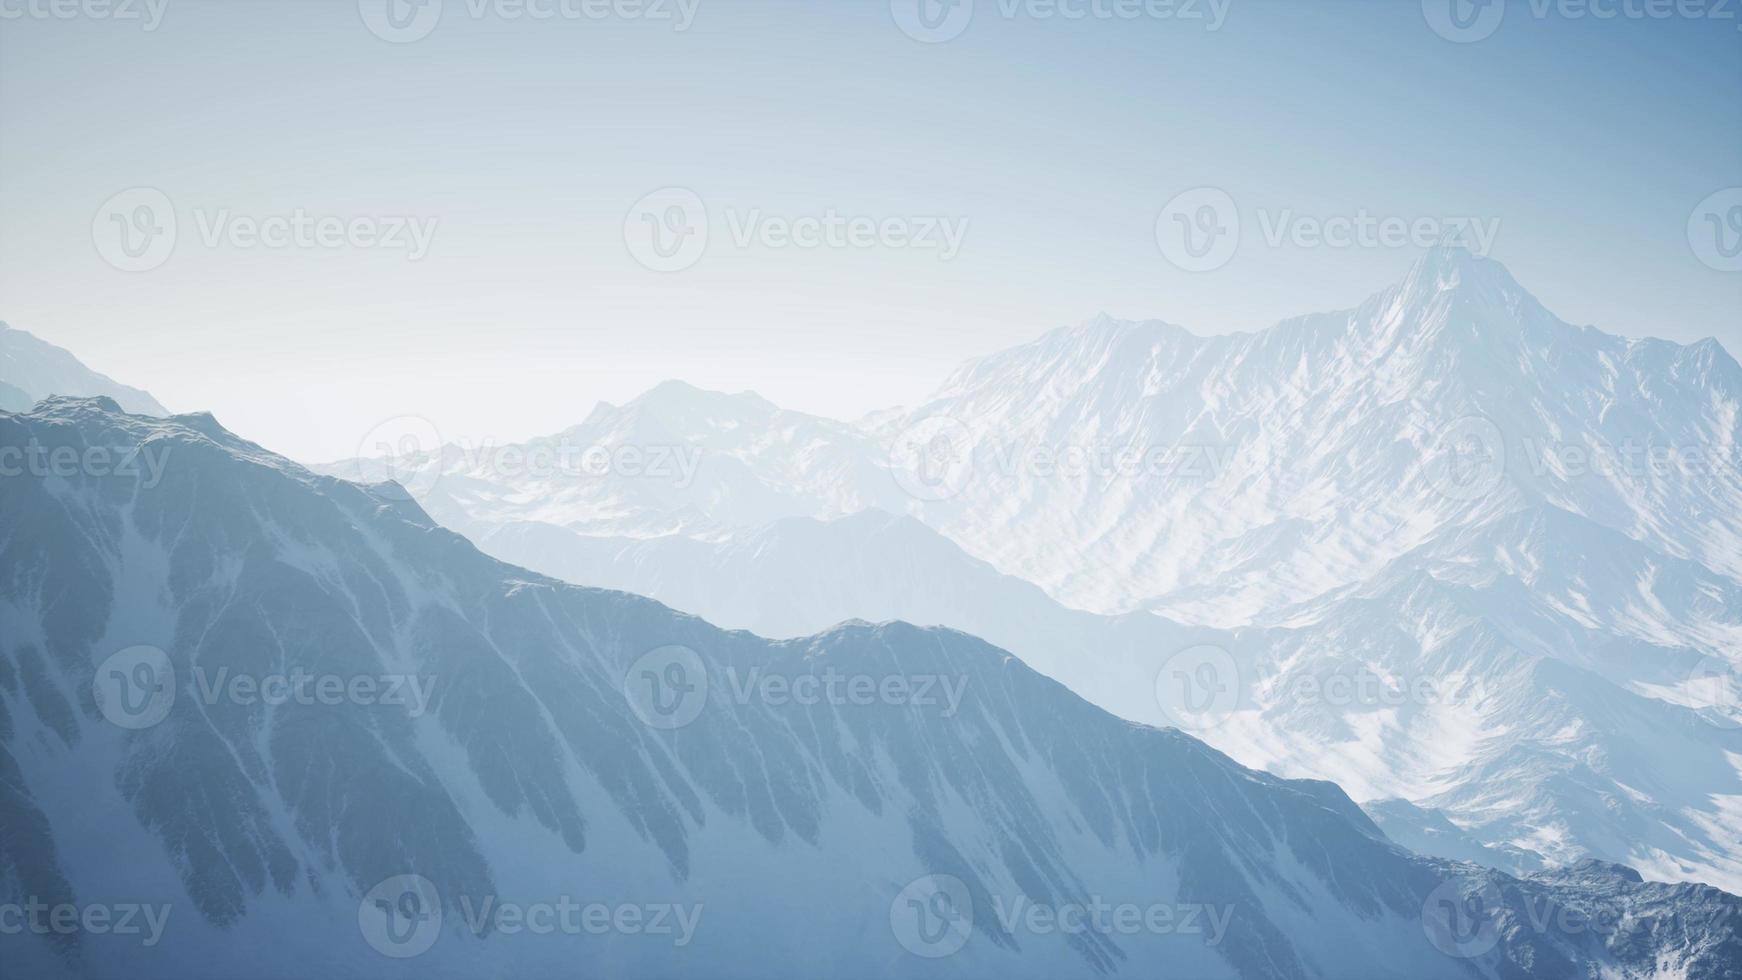 montagnes des alpes vues du ciel photo